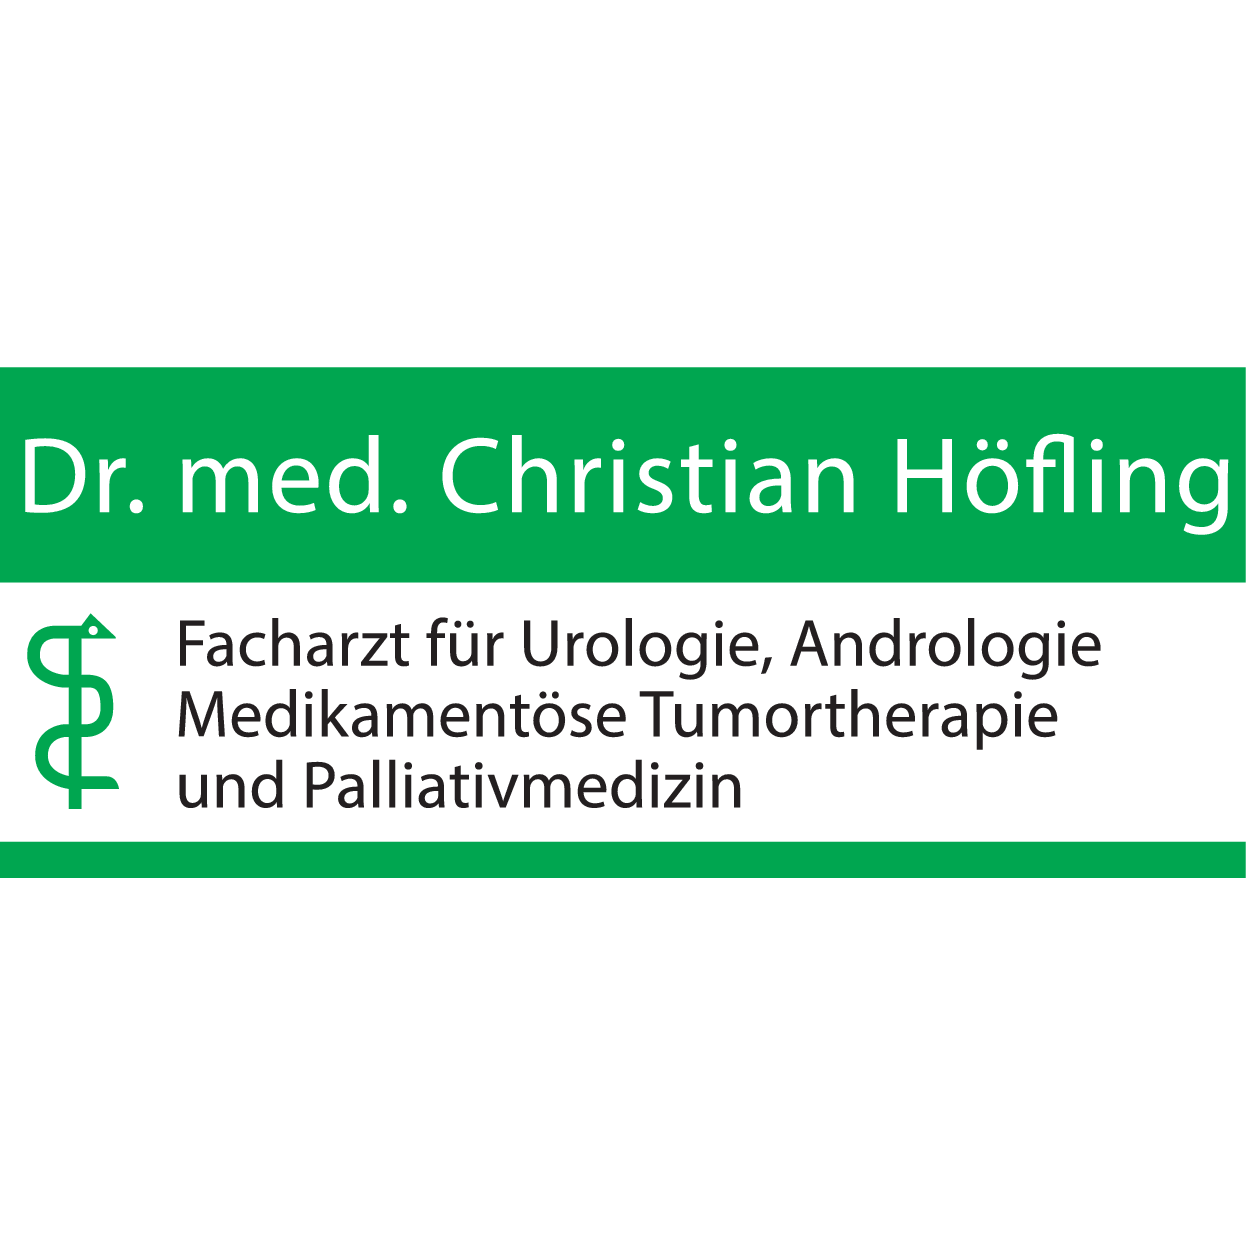 Dr. med. Christian Höfling in Chemnitz